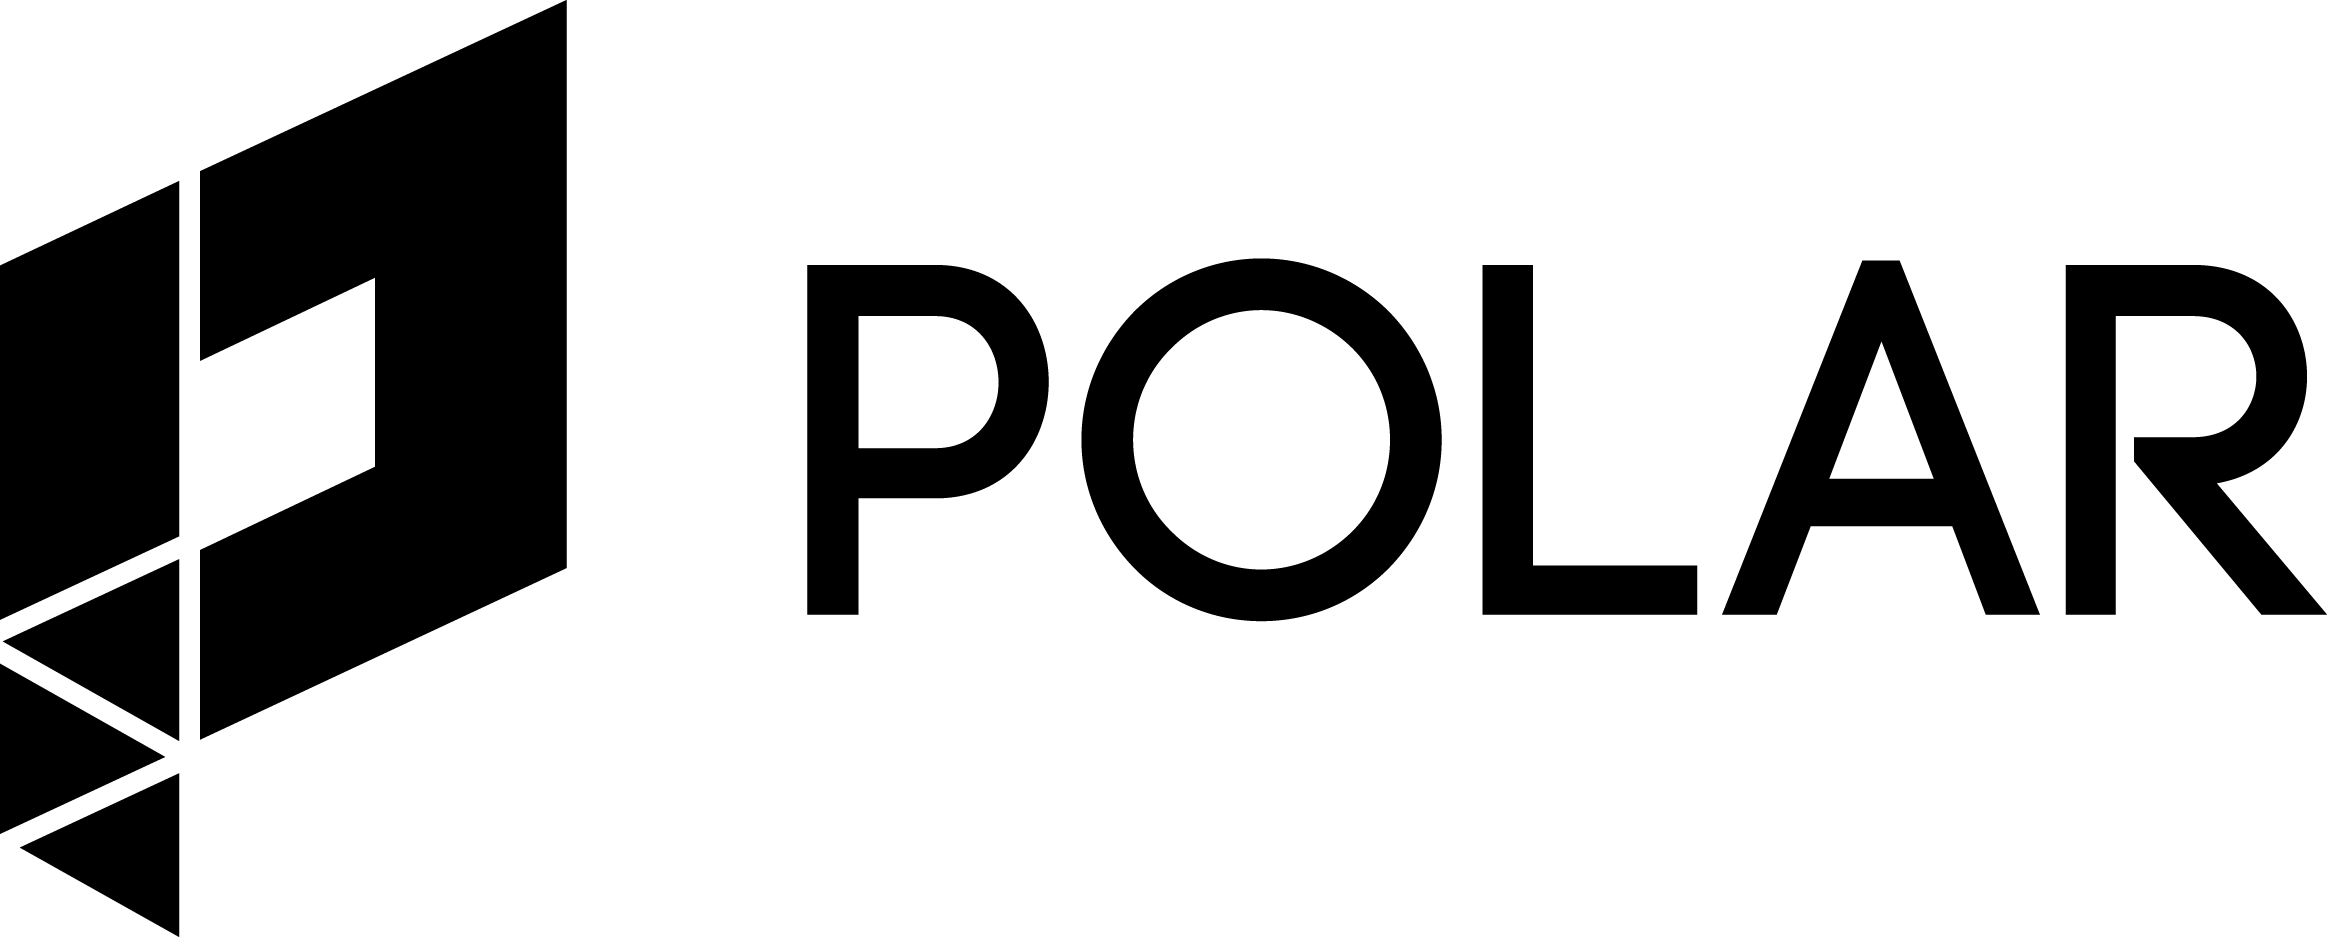 Polar Logo - Polar | Press Page